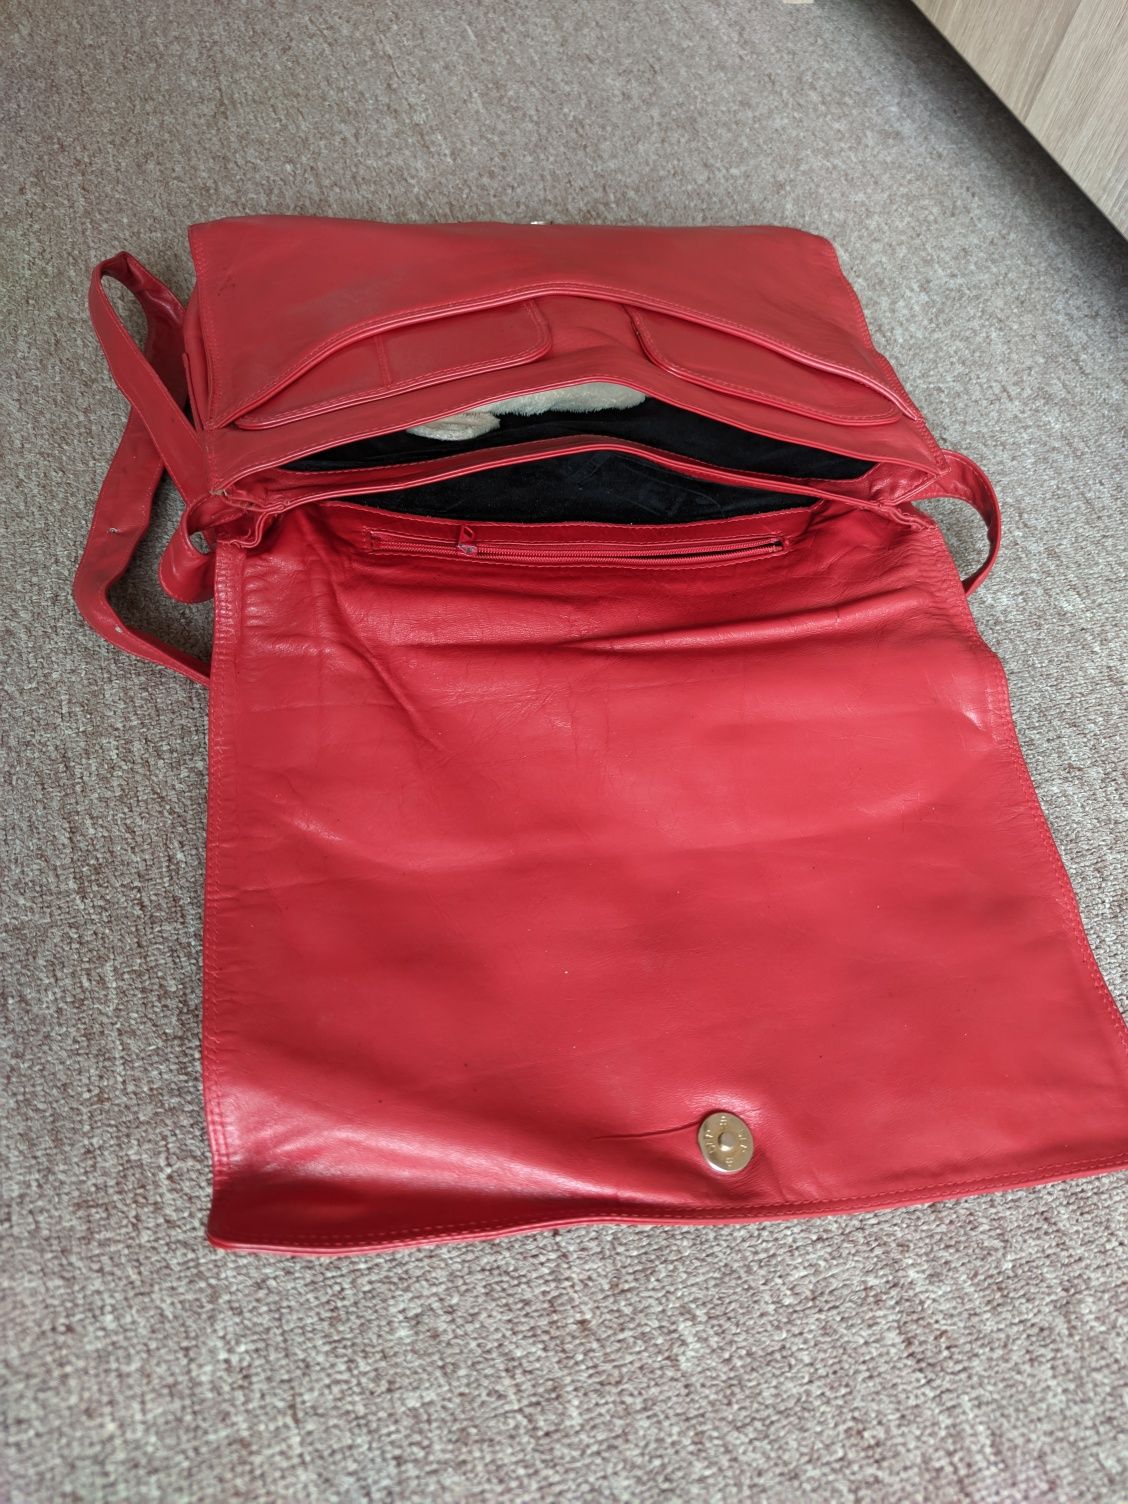 Кожаная сумка Tula Красная